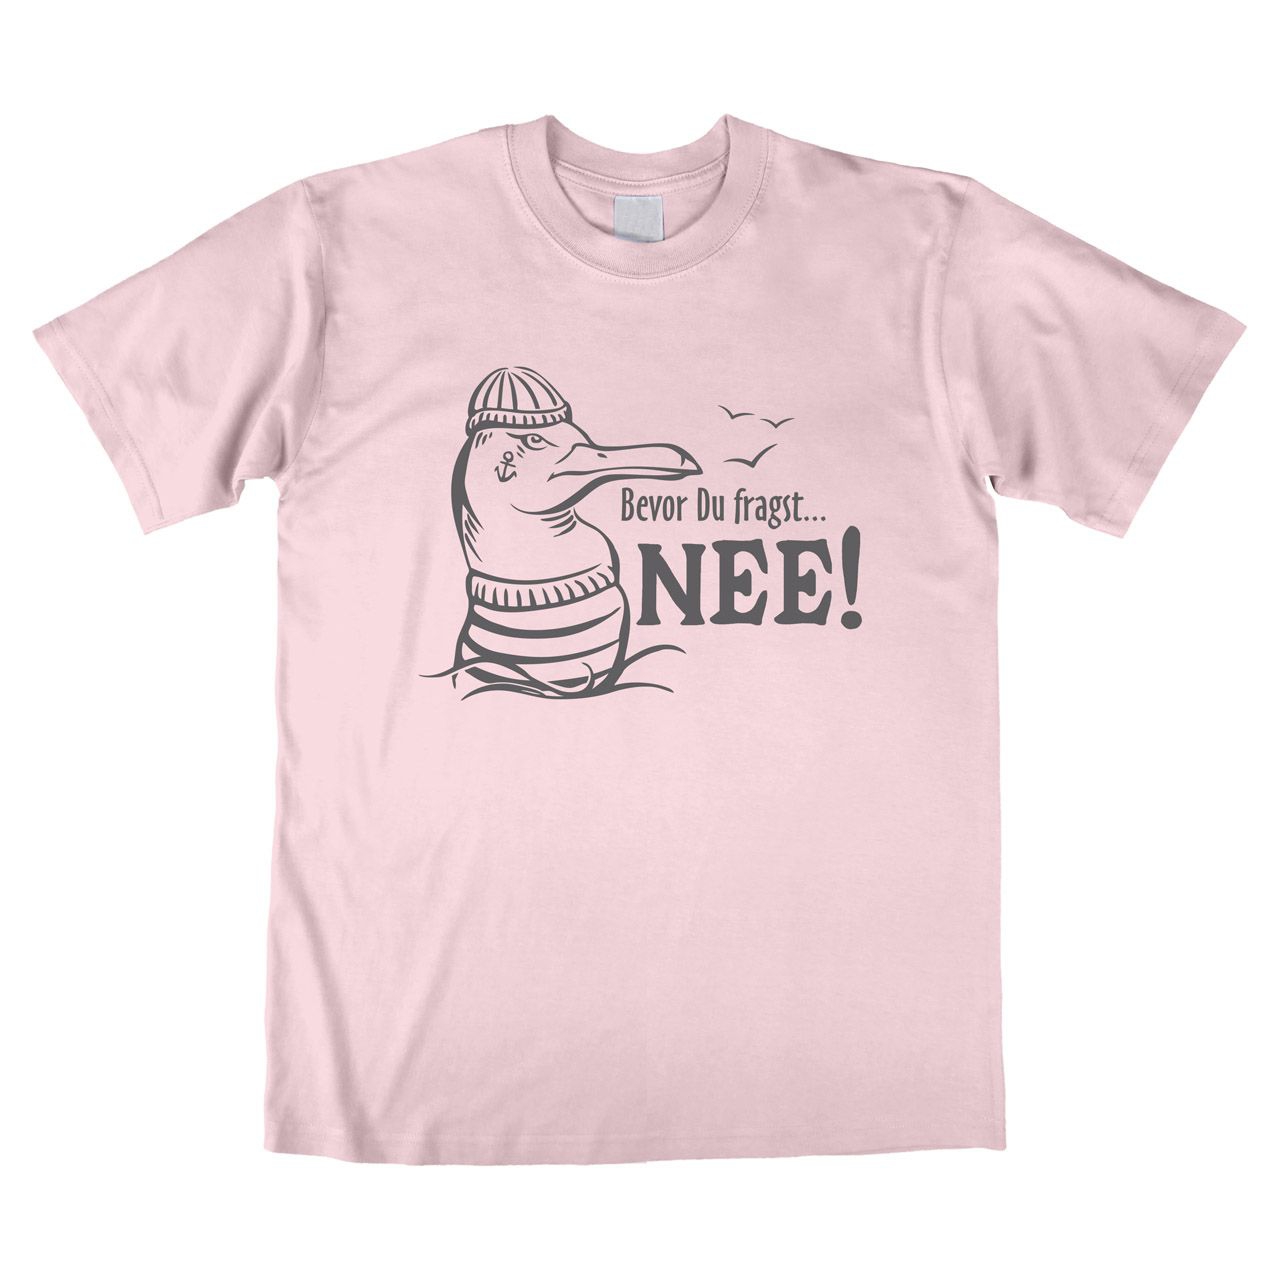 Bevor du fragst nee Möwe Unisex T-Shirt rosa Medium